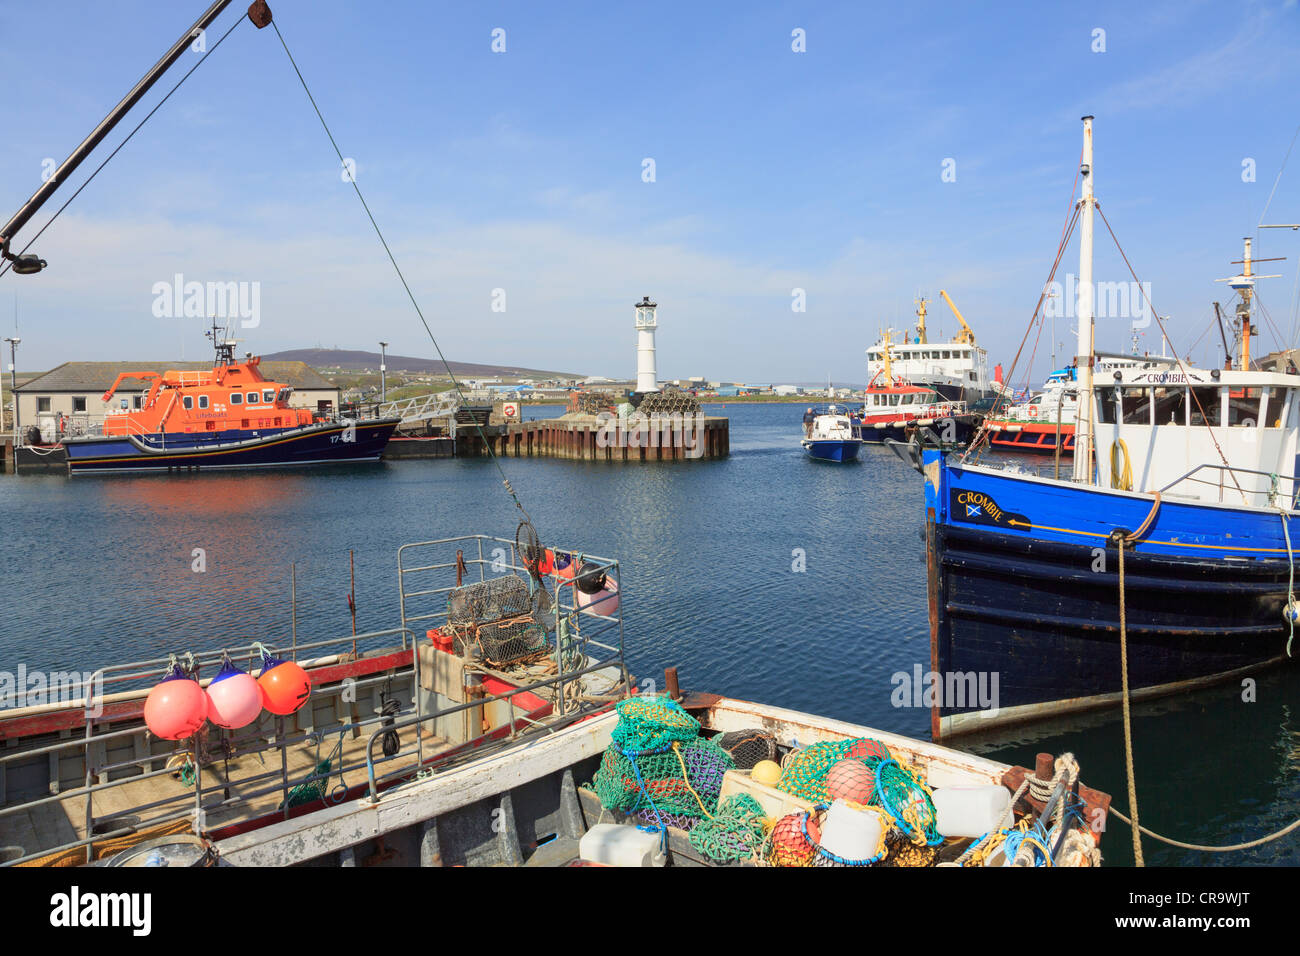 Pesca pelagica barche ormeggiate nel porto interno con RNLI scialuppa di salvataggio oltre a Kirkwall, delle Isole Orkney continentale, Scotland, Regno Unito Foto Stock